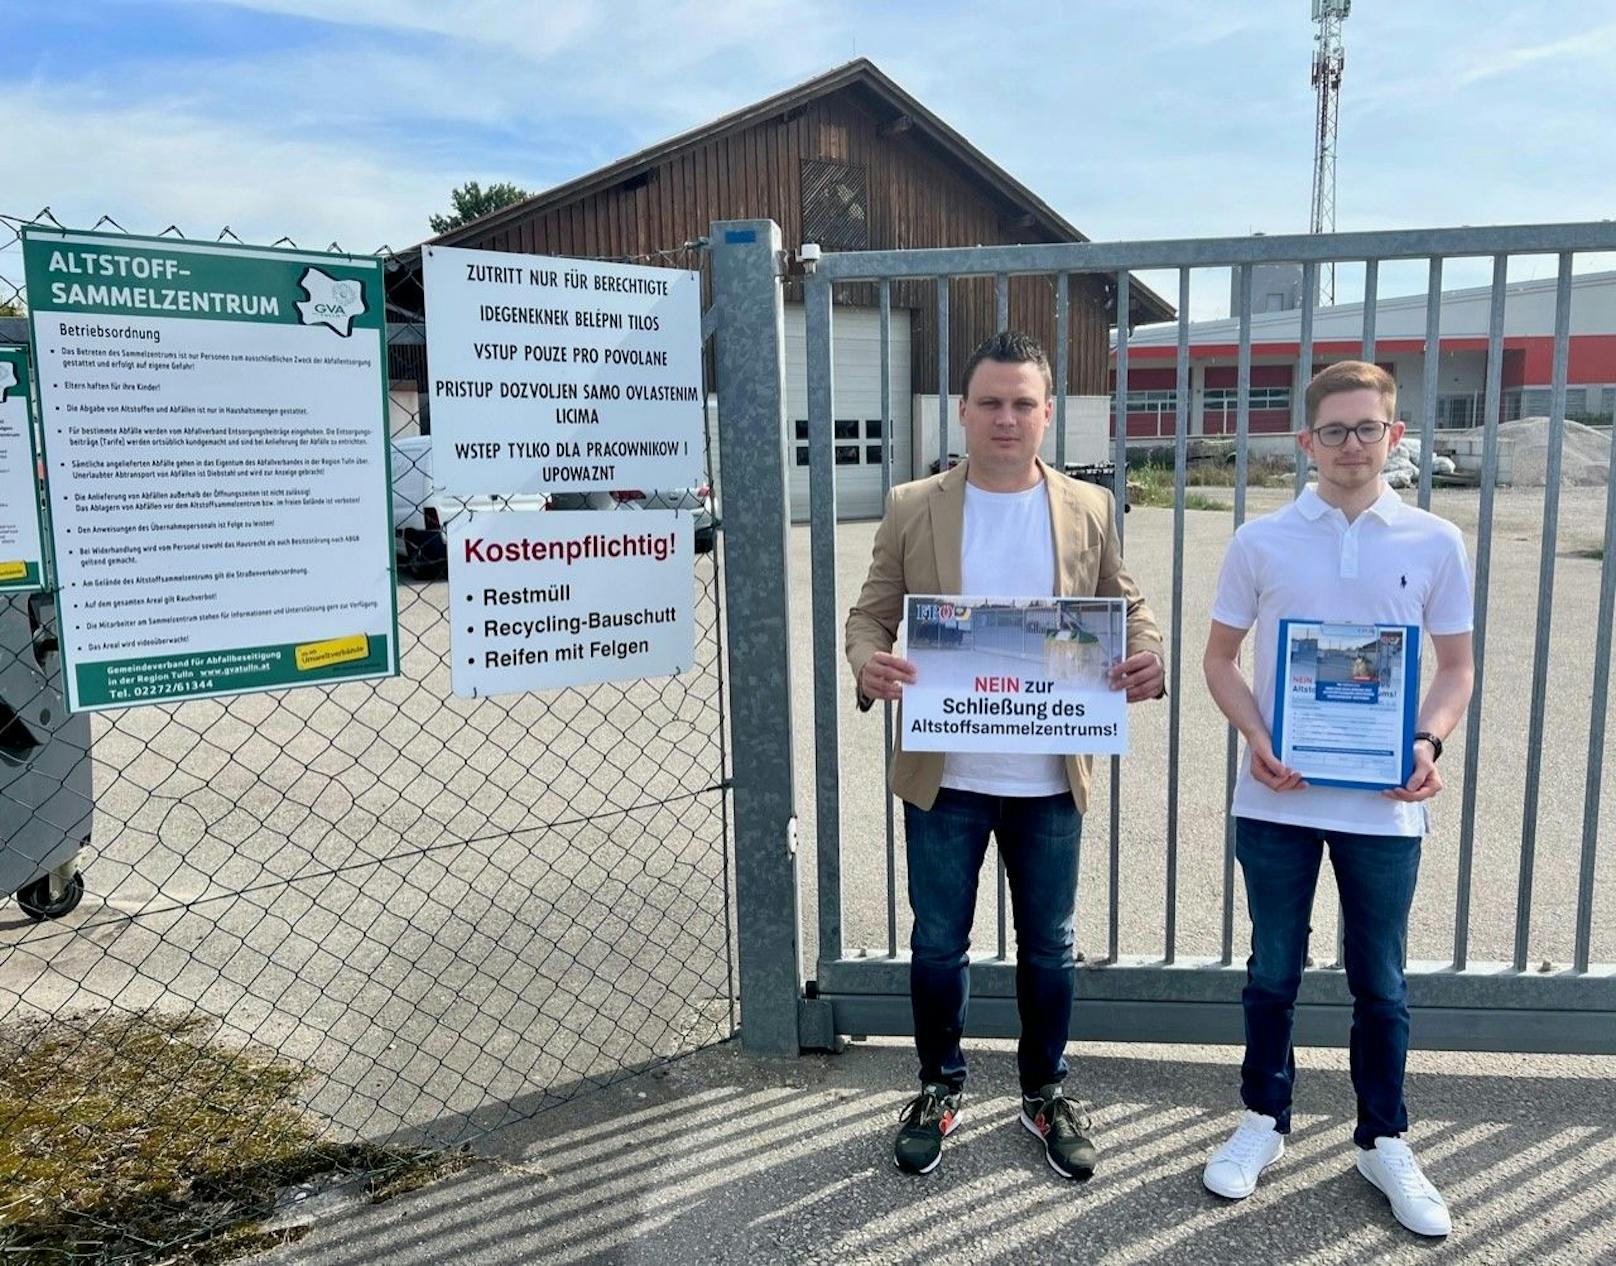 FPÖ kämpft für den Erhalt von Altstoffsammelzentrum